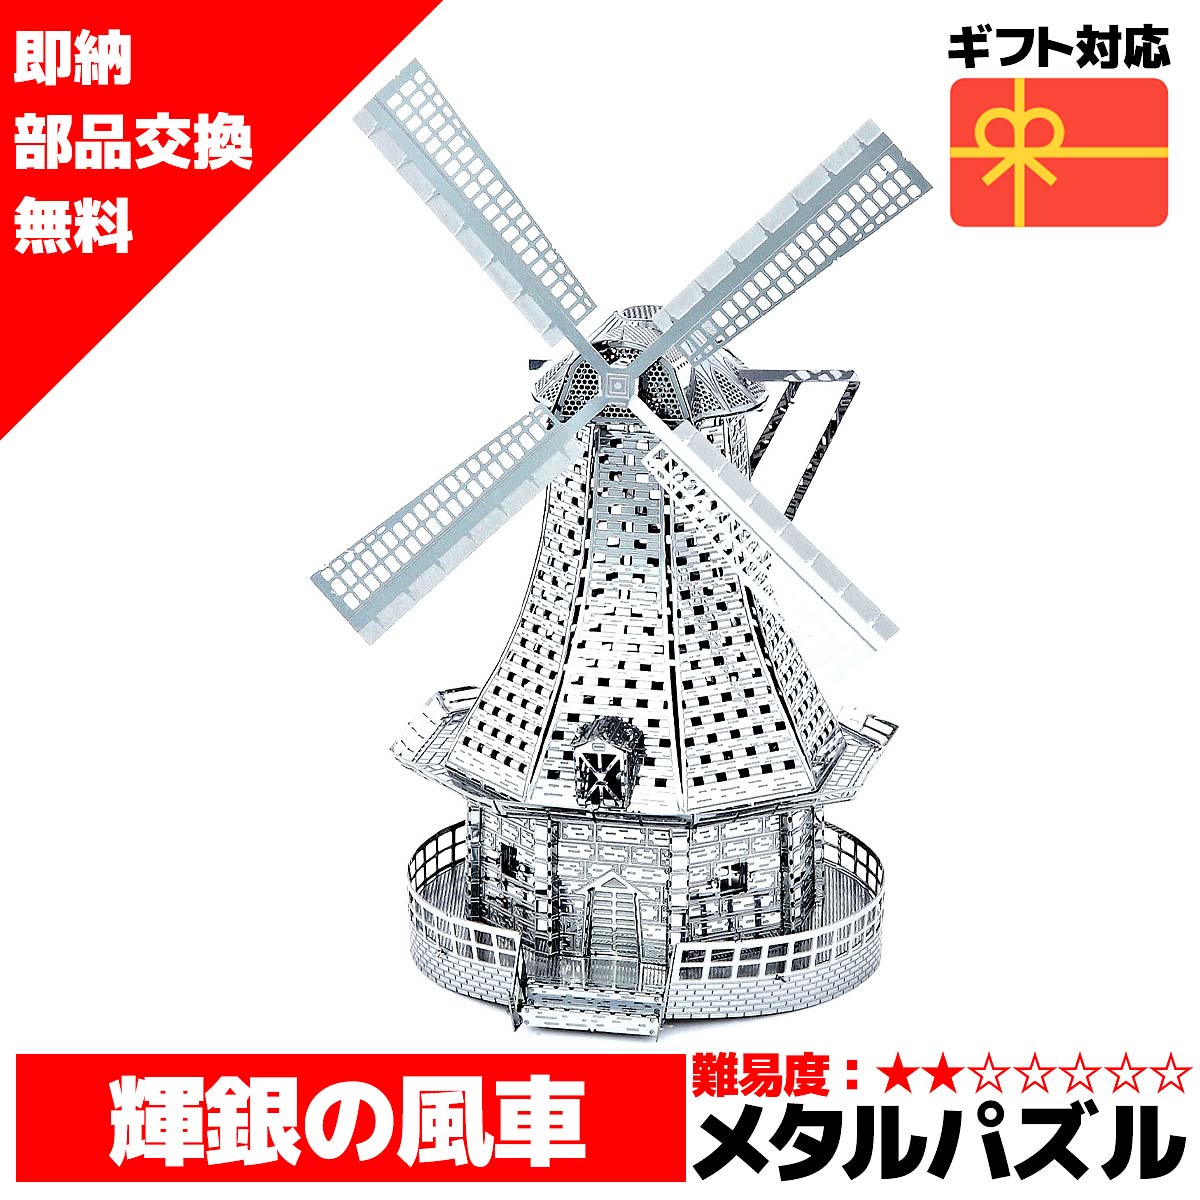 メタルパズル 3Dメタルパズル 風車 ウィンドミル 送料無料 約 1000円ポッキリ ラッピング